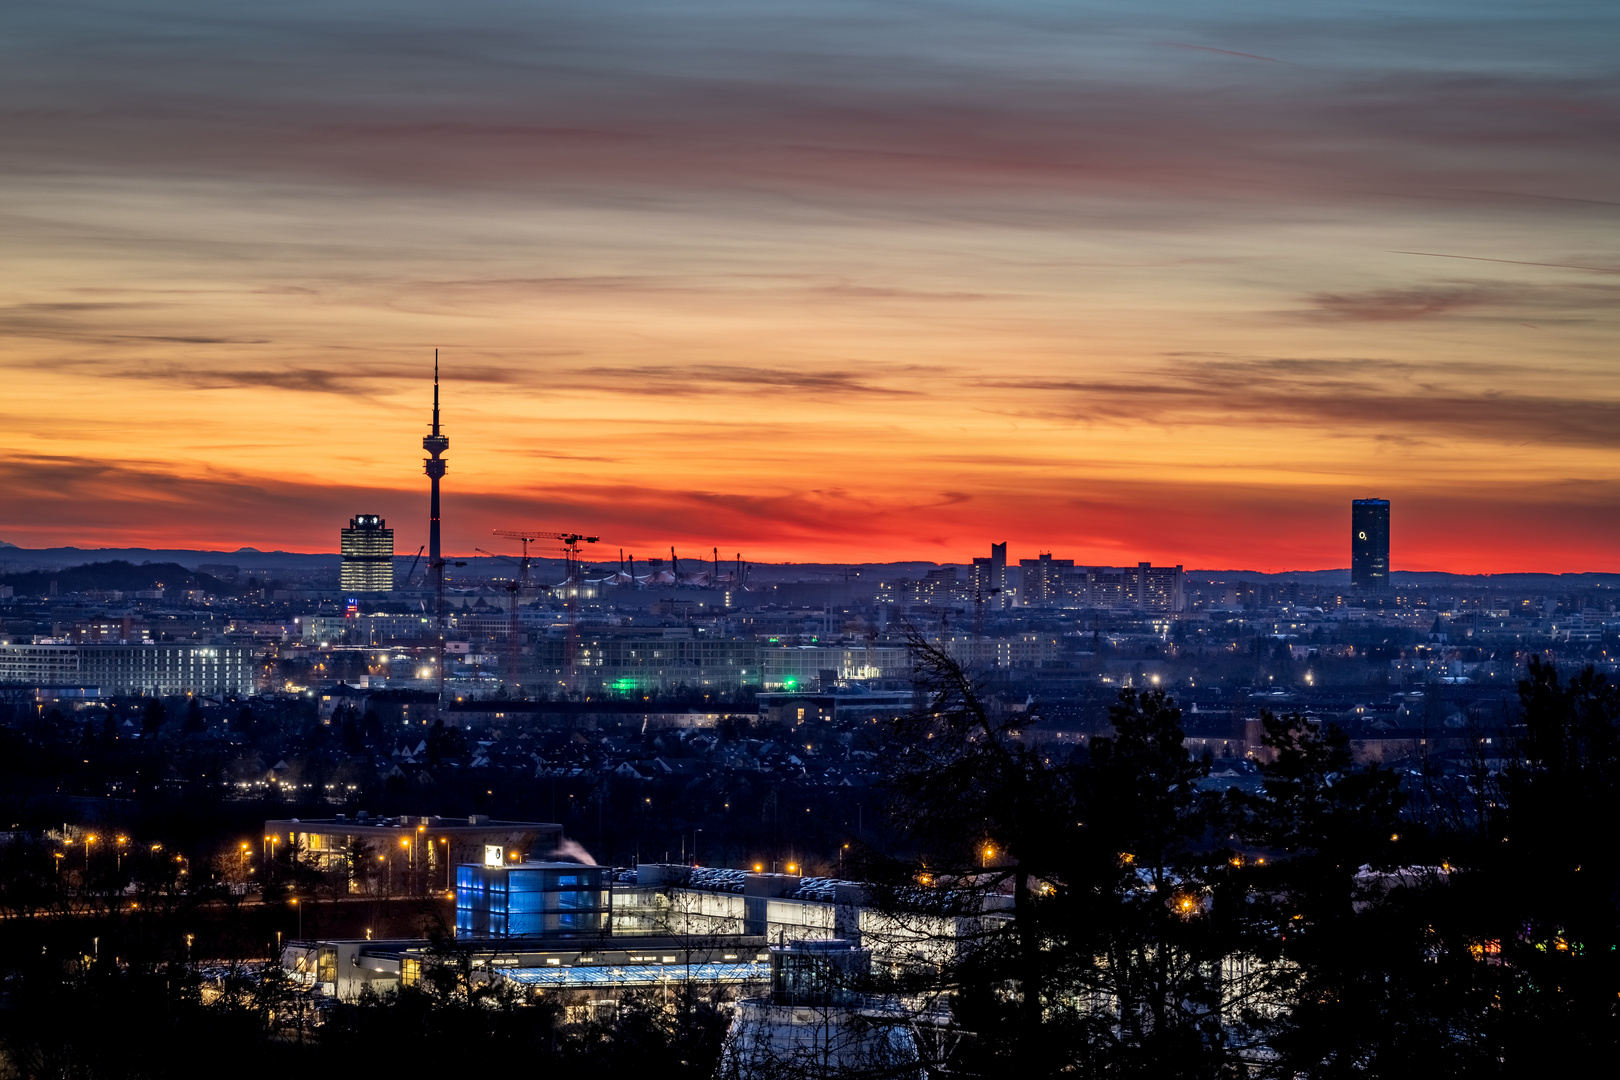 Sonnenuntergang über München